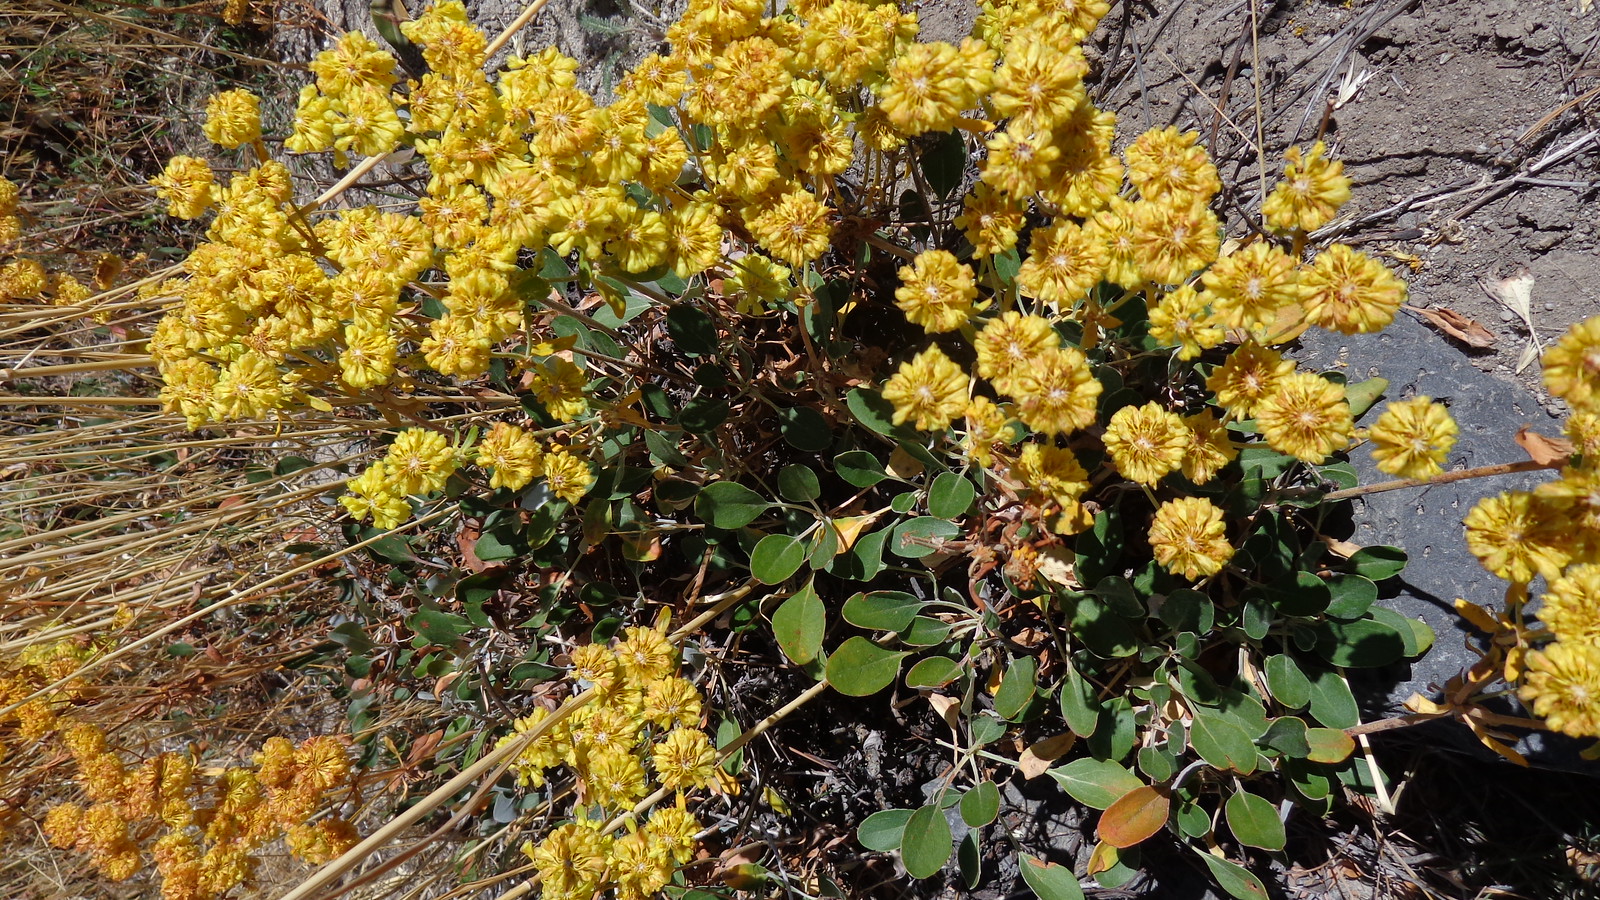 Sulphur buckwheat (Eriogonum umbellatum)